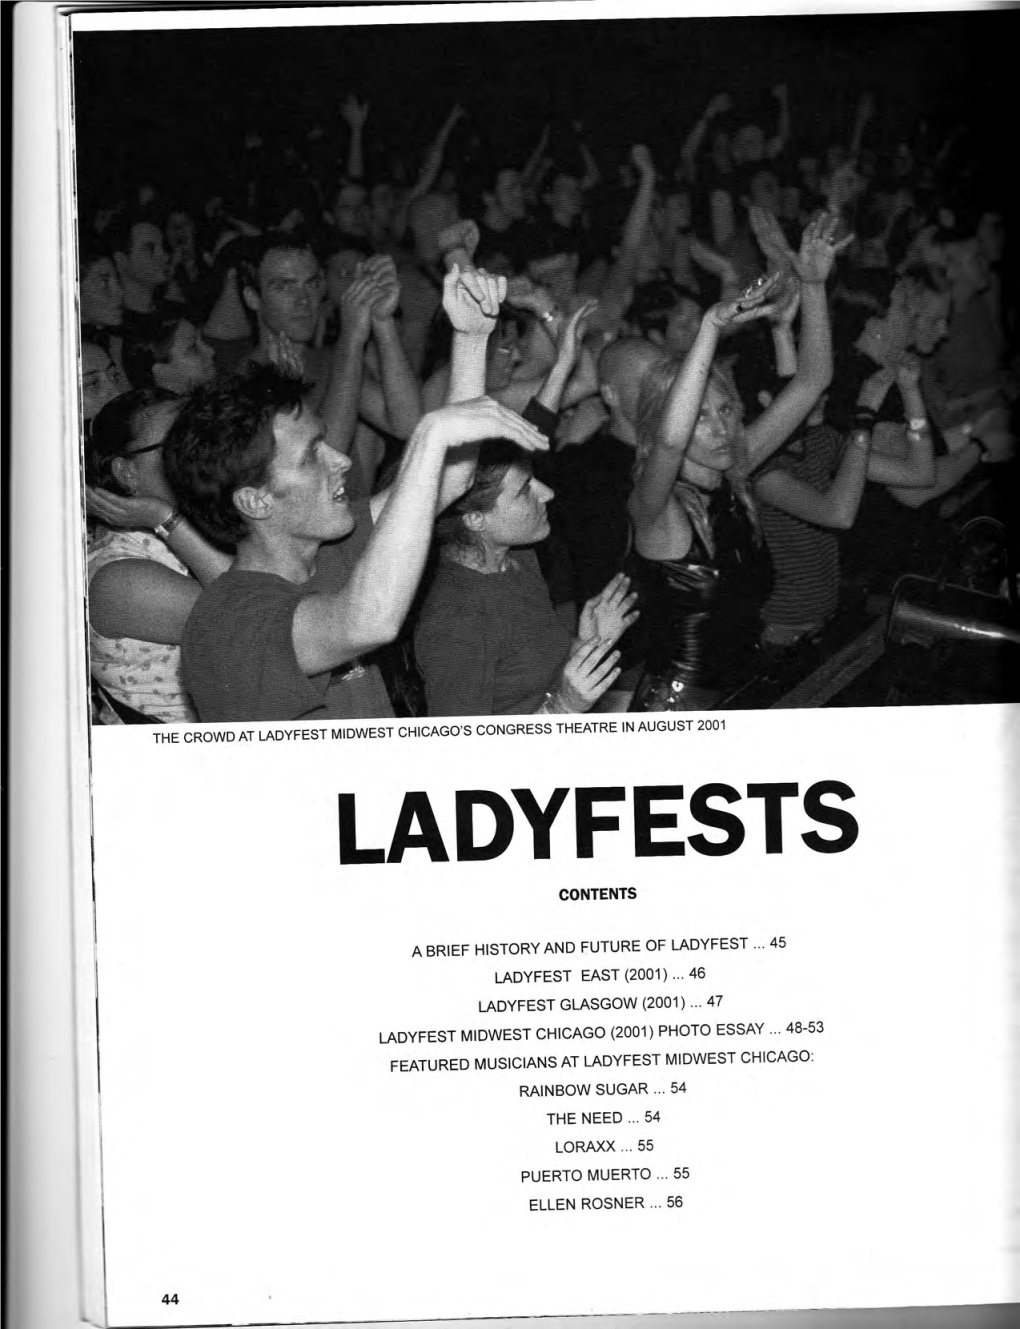 Ladyfests Contents